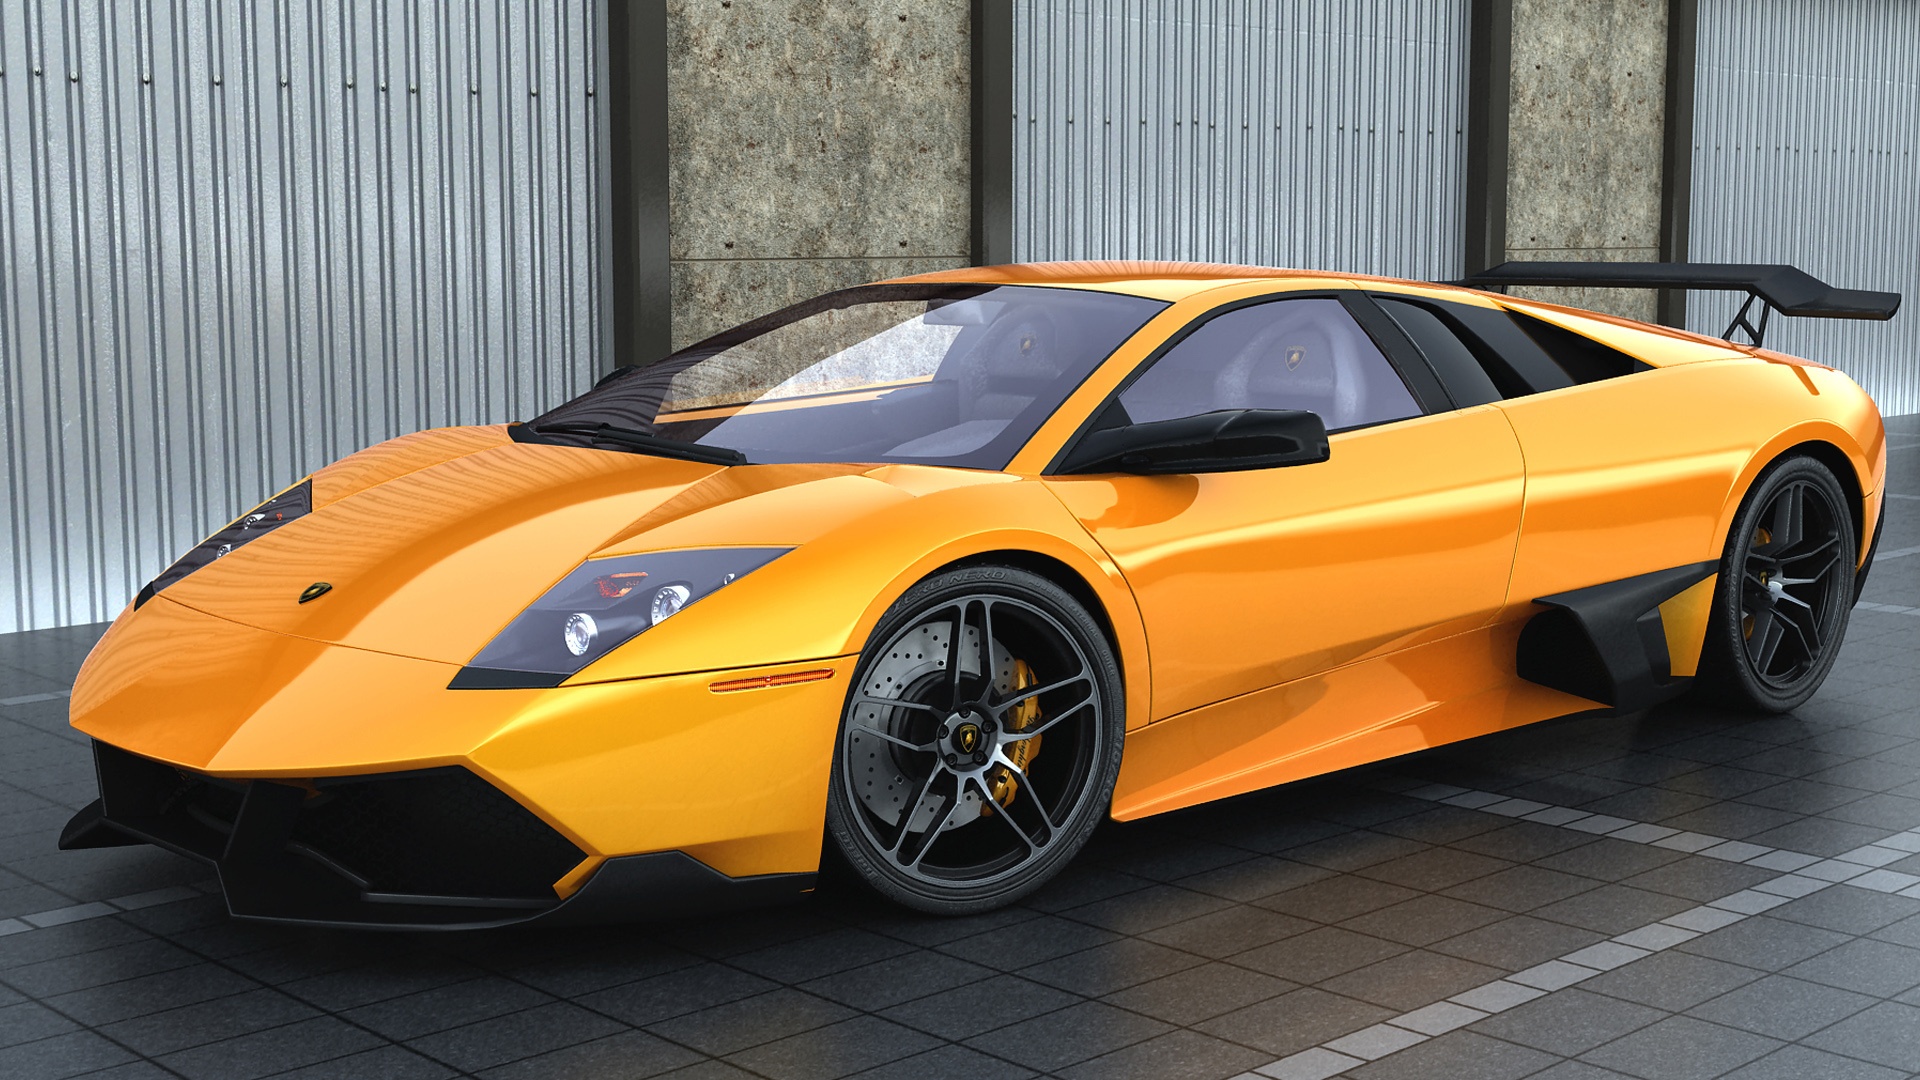 желтый спортивный автомобиль Lamborghini Aventador yellow sports car бесплатно